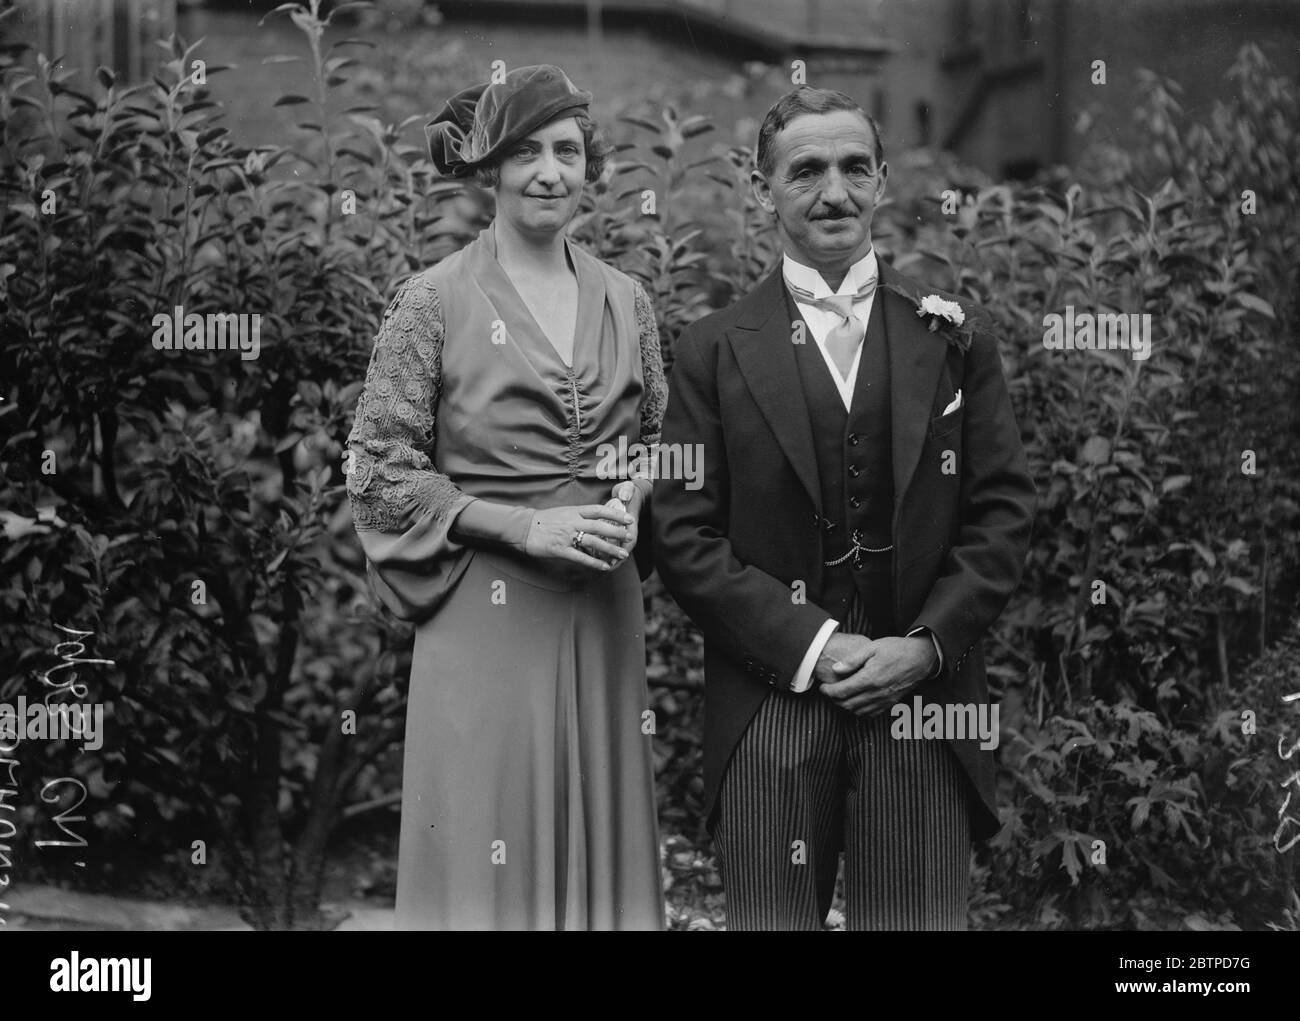 Walisischer Rugby International verheiratet. Dr. Teddy Morgan, der Welsh Rugby International Wing Three Quarter, war verheiratet in St Paul 's, Hampstead zu Frau Margaret Tolhurst, von Neuseeland. Die Braut und Bräutigam beim Empfang, nach der Zeremonie. Bis 24. August 1933 Stockfoto